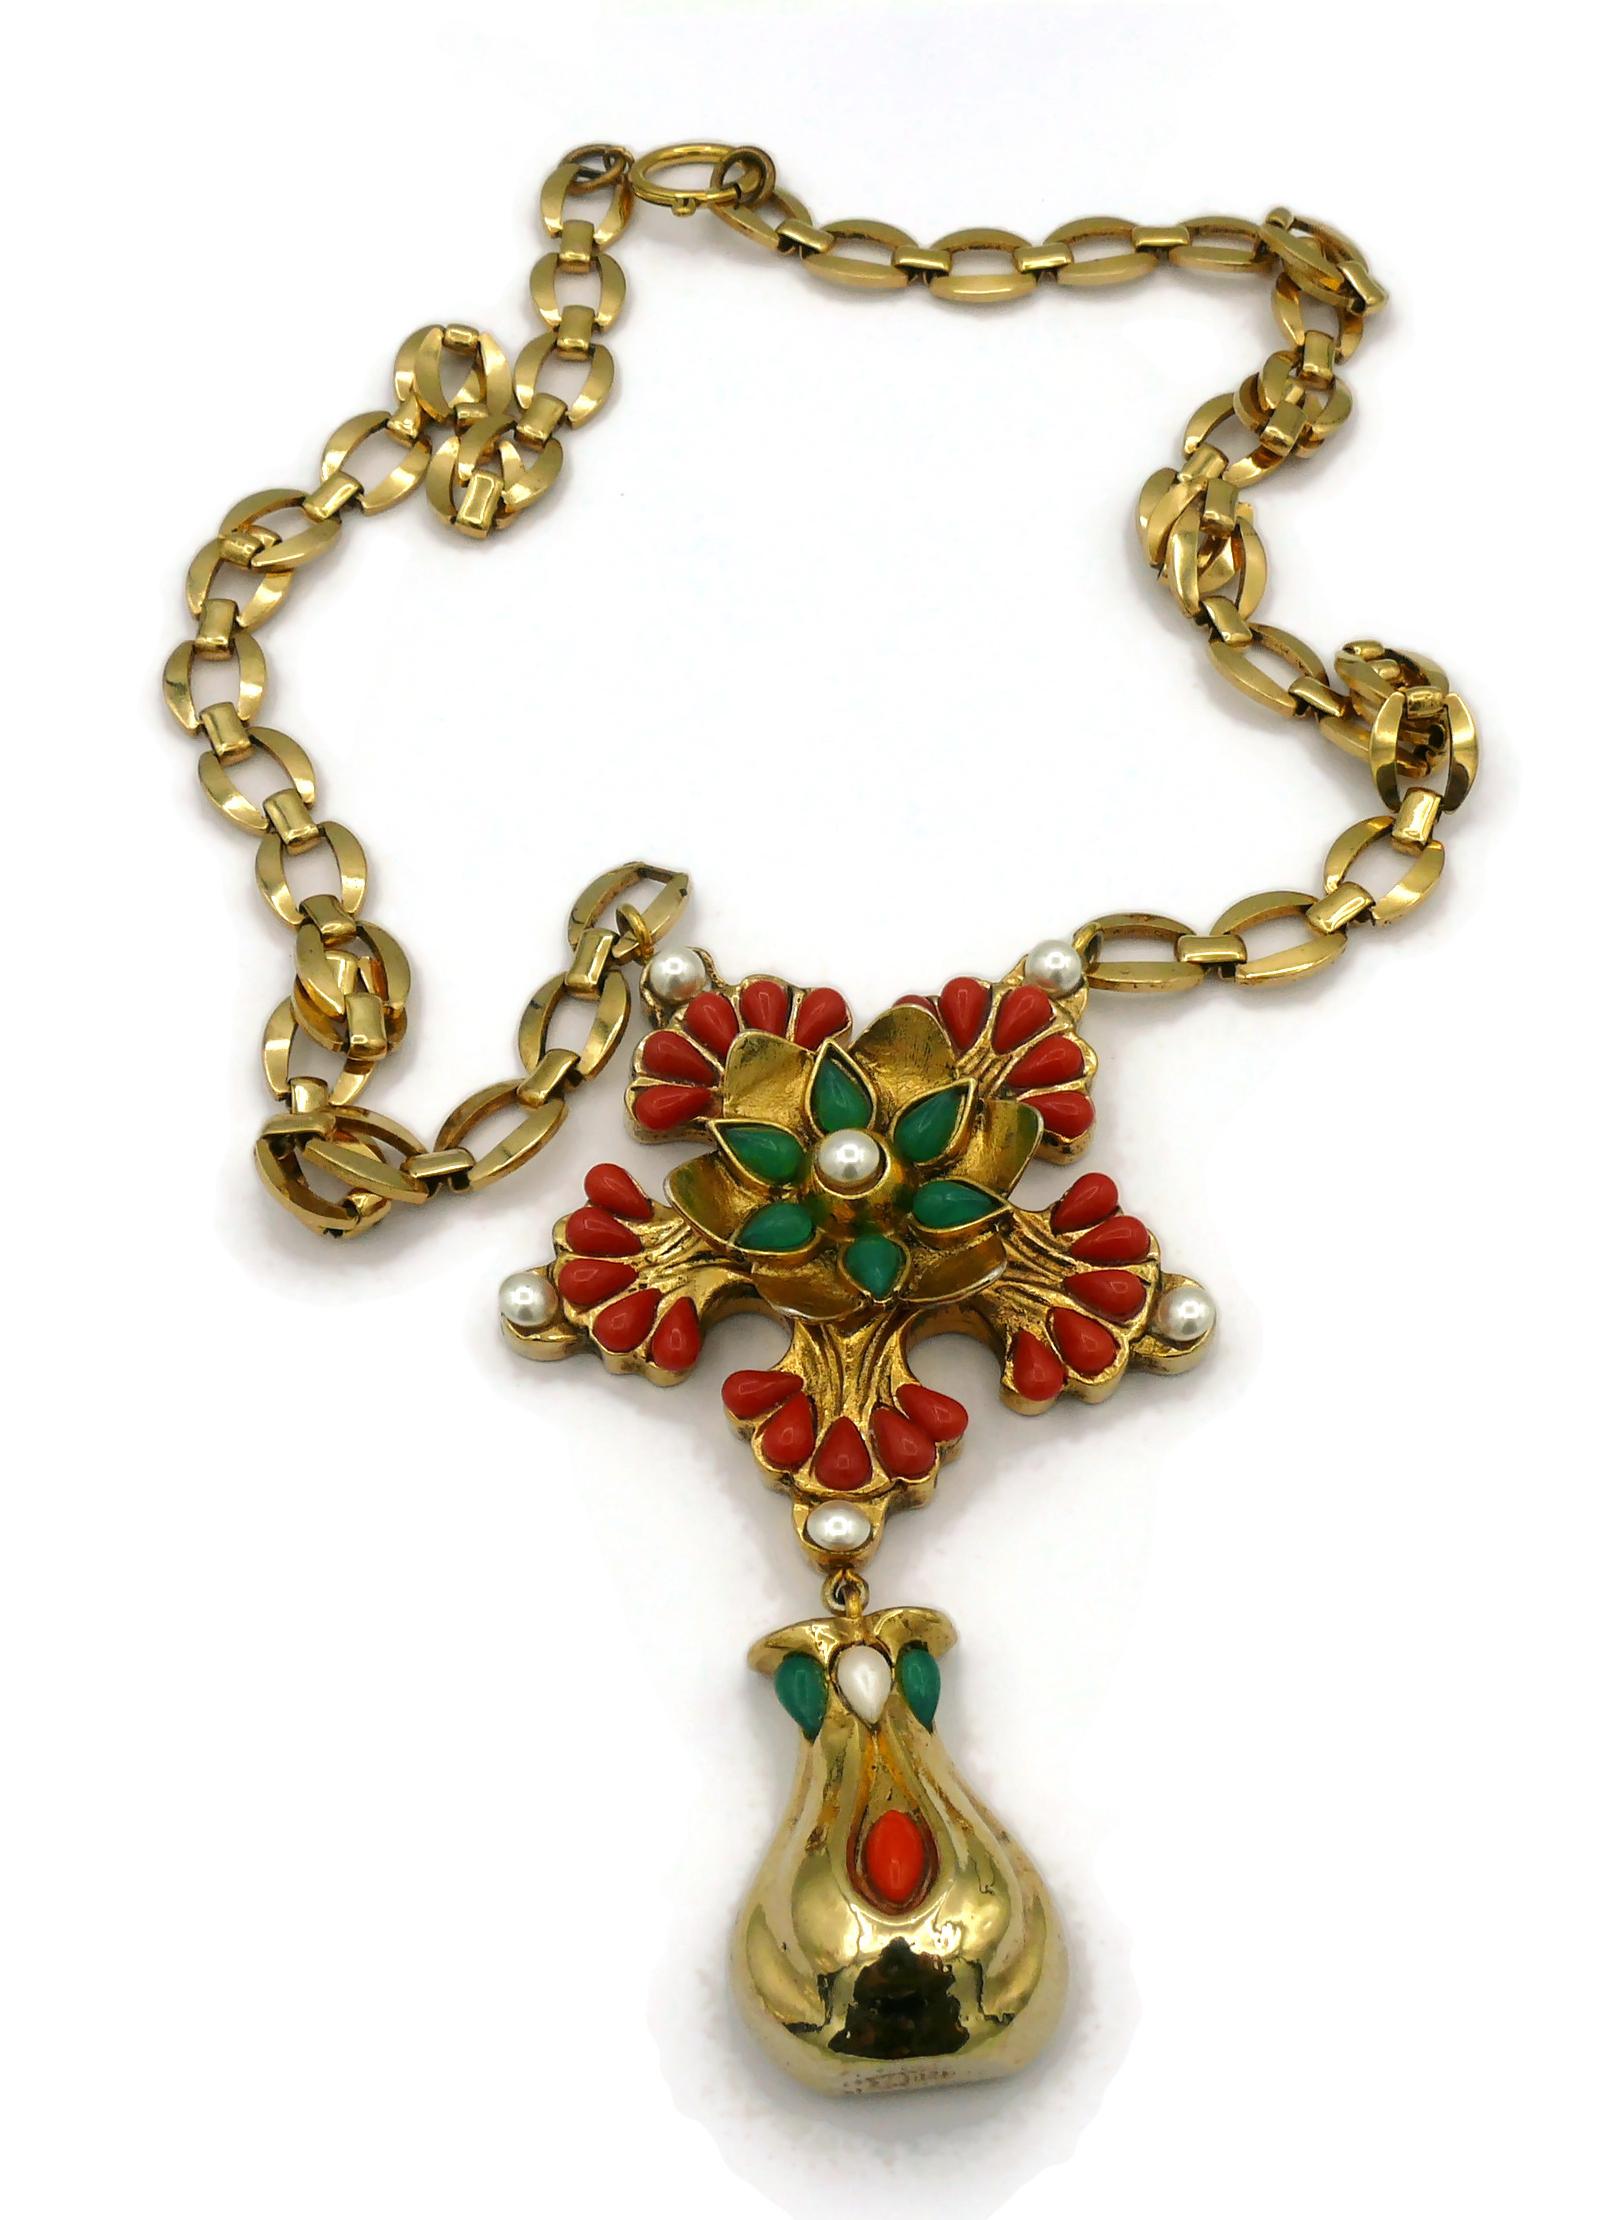 dominique denaive jewelry